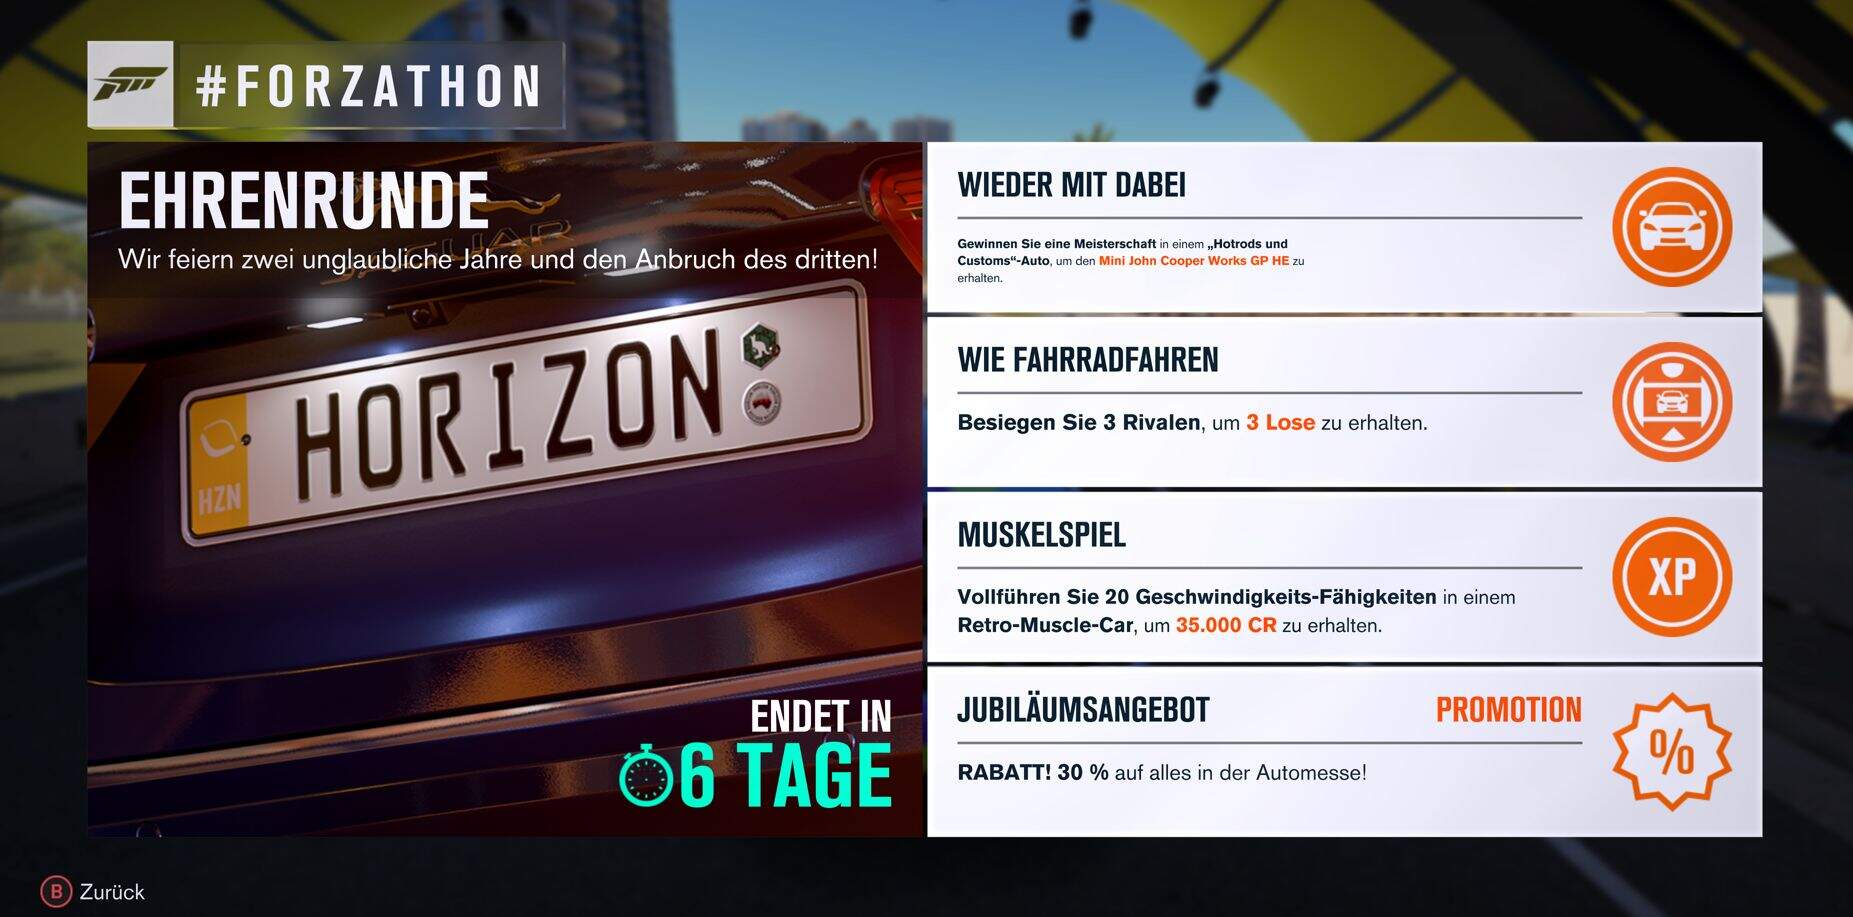 Forza Horizon 3 #Forzathon Guide KW 39 – Ehrenrunde